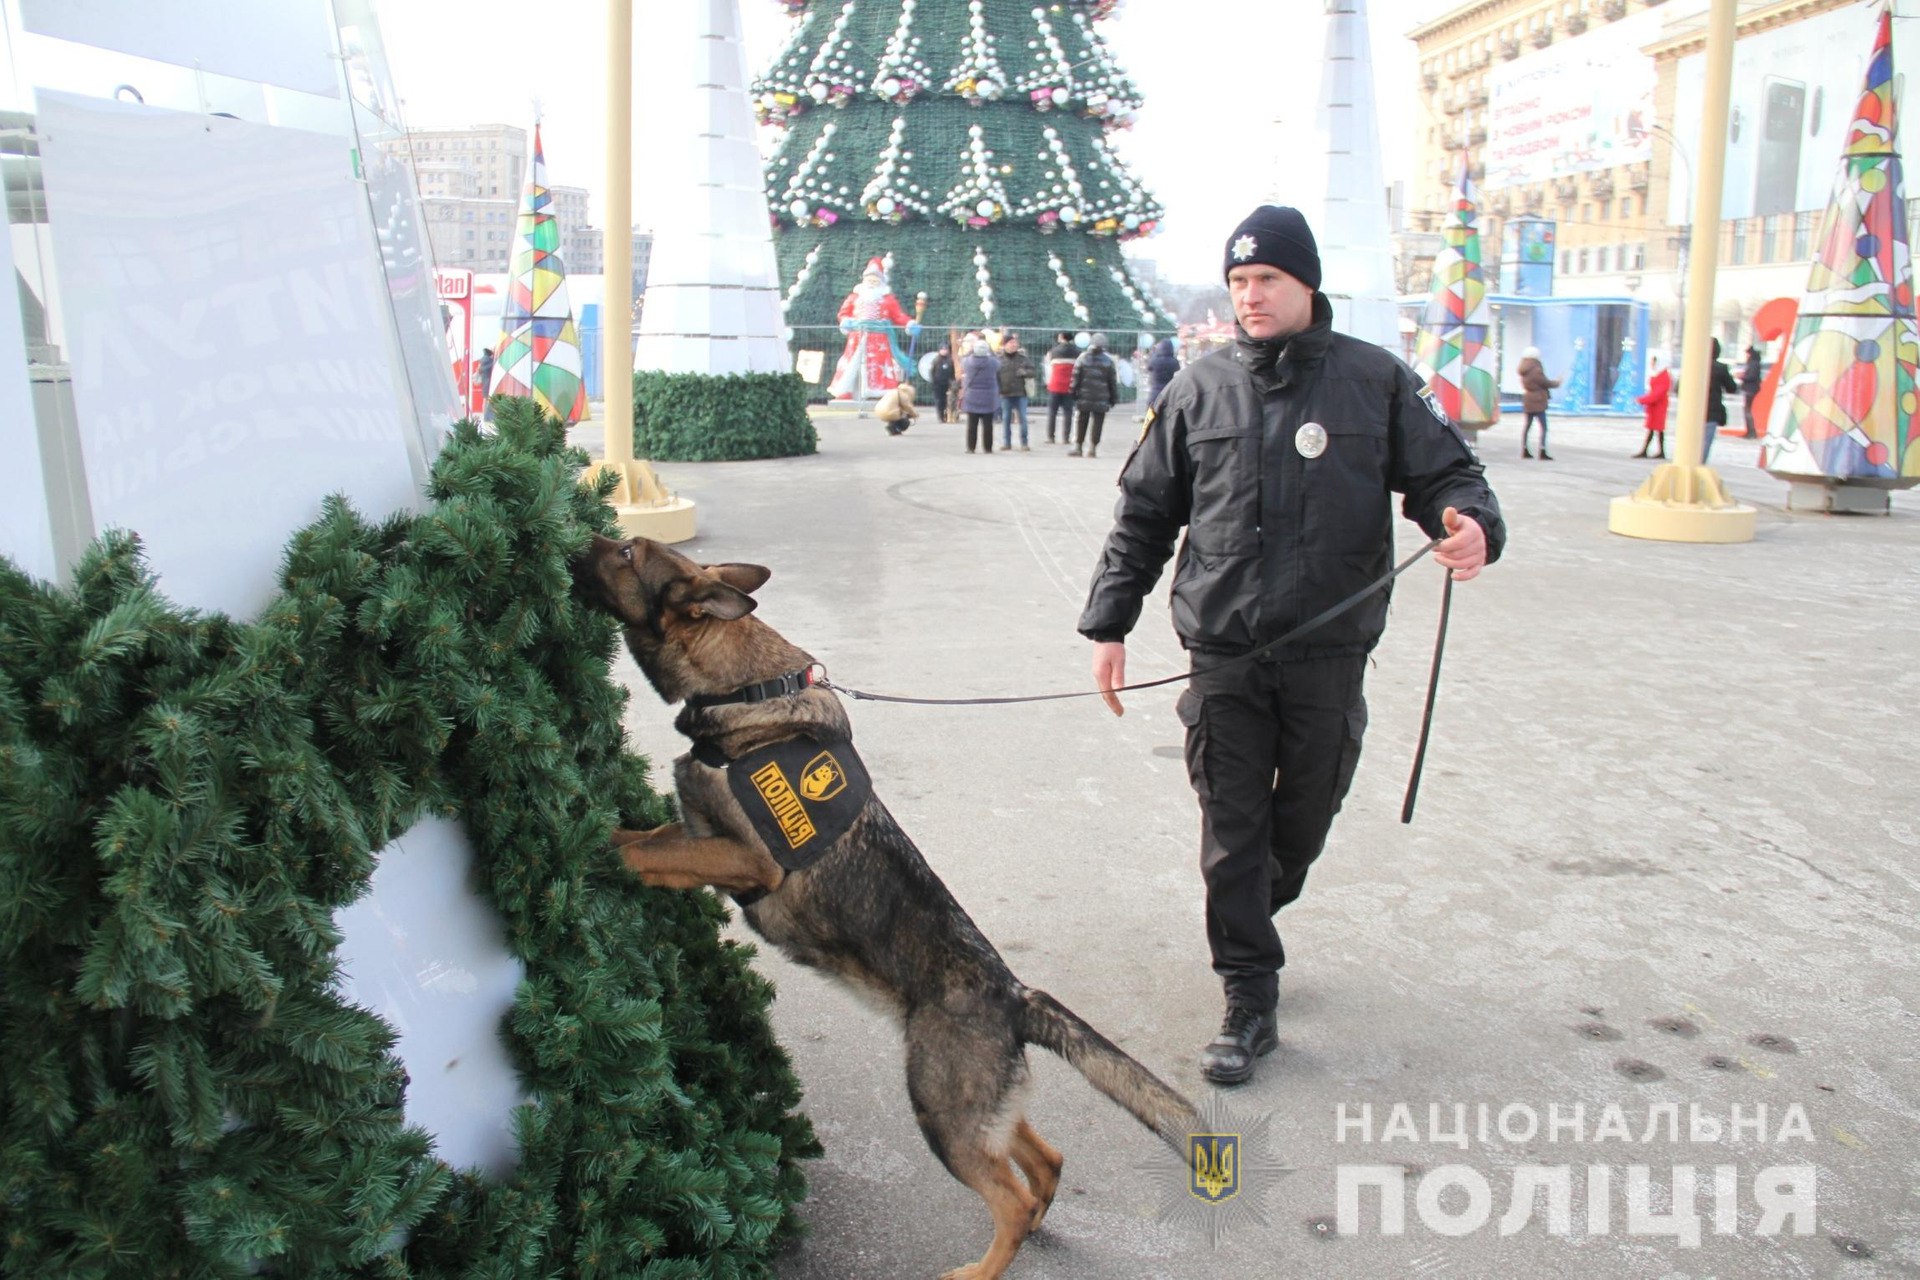 На новогодние праздники в Харькове порядок будут обеспечивать более 2,5 тысяч правоохранителей